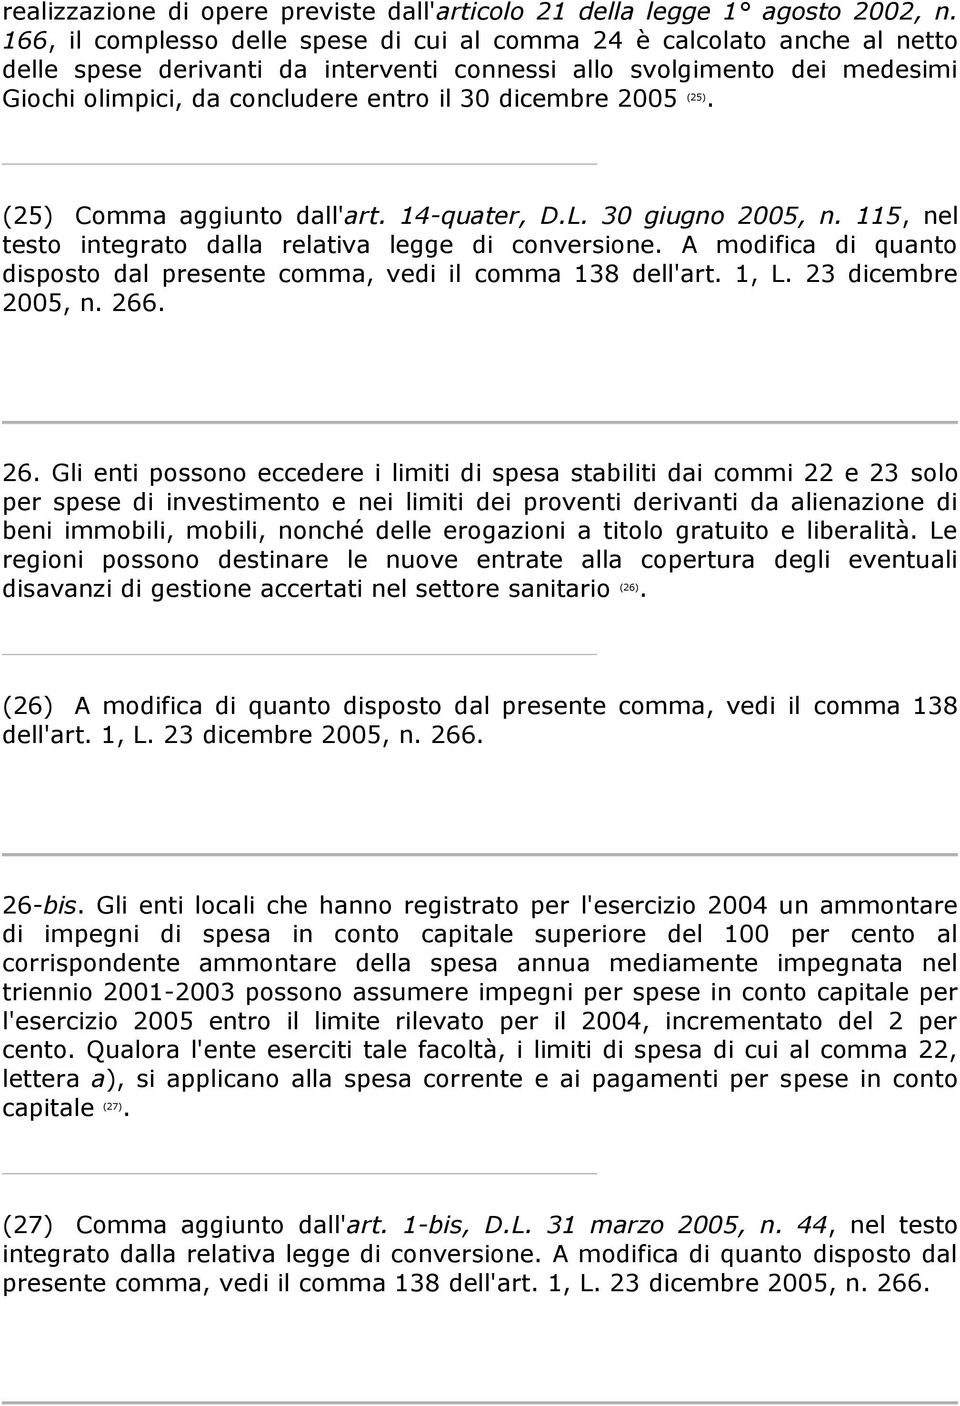 dicembre 2005 (25). (25) Comma aggiunto dall'art. 14-quater, D.L. 30 giugno 2005, n. 115, nel testo integrato dalla relativa legge di conversione.